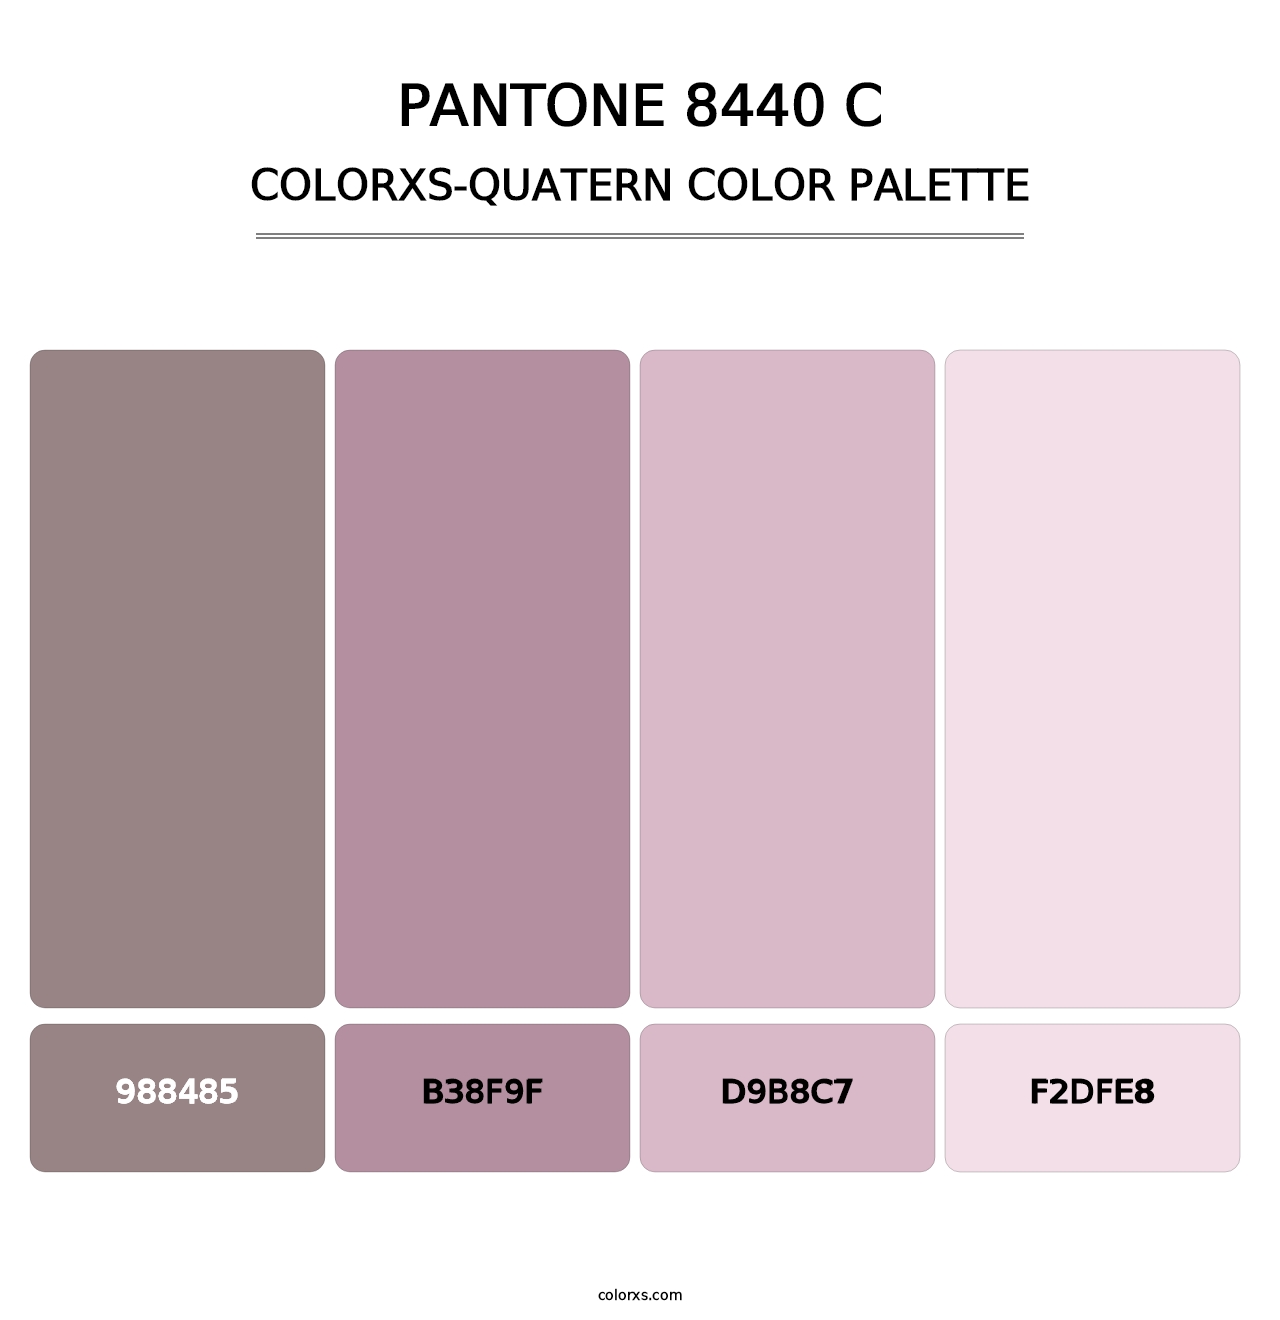 PANTONE 8440 C - Colorxs Quatern Palette